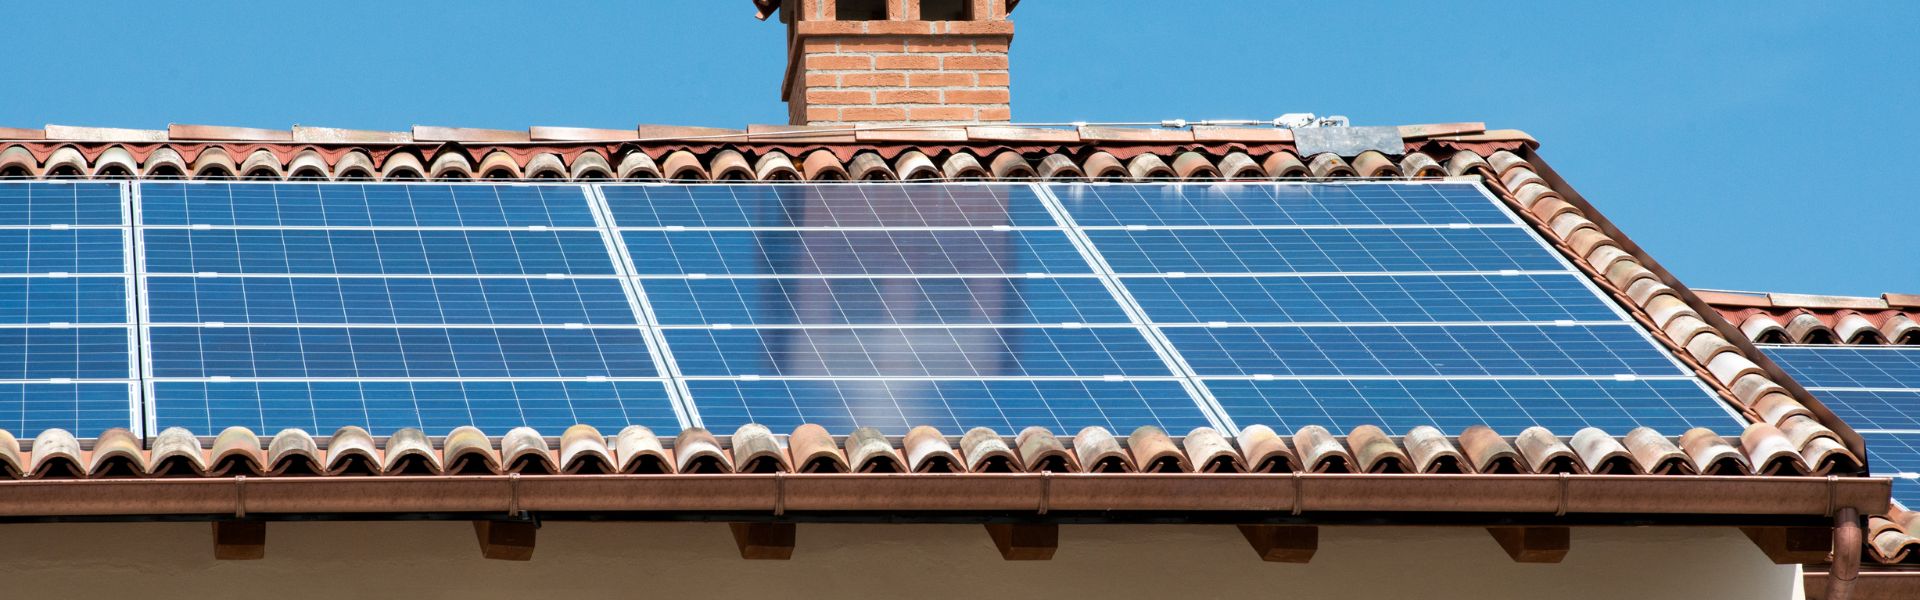 fotovoltaico-tetto-casa